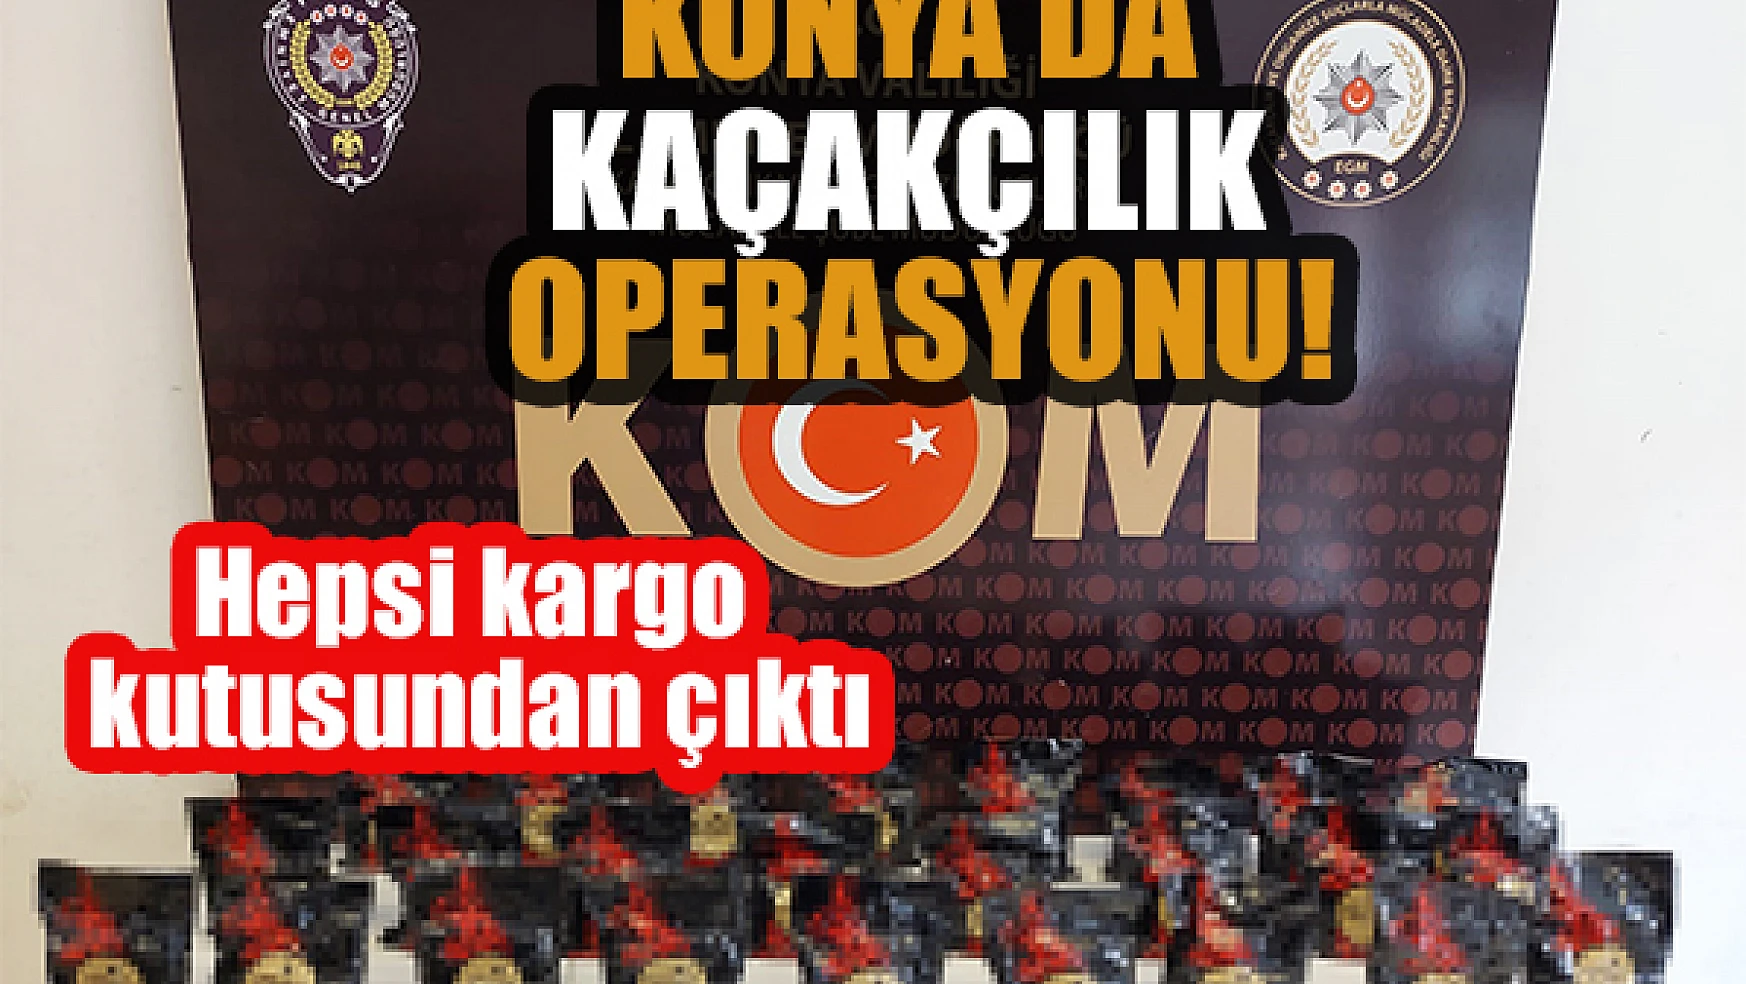 Konya'da kaçakçılık operasyonu:  Hepsi kargo kutusundan çıktı